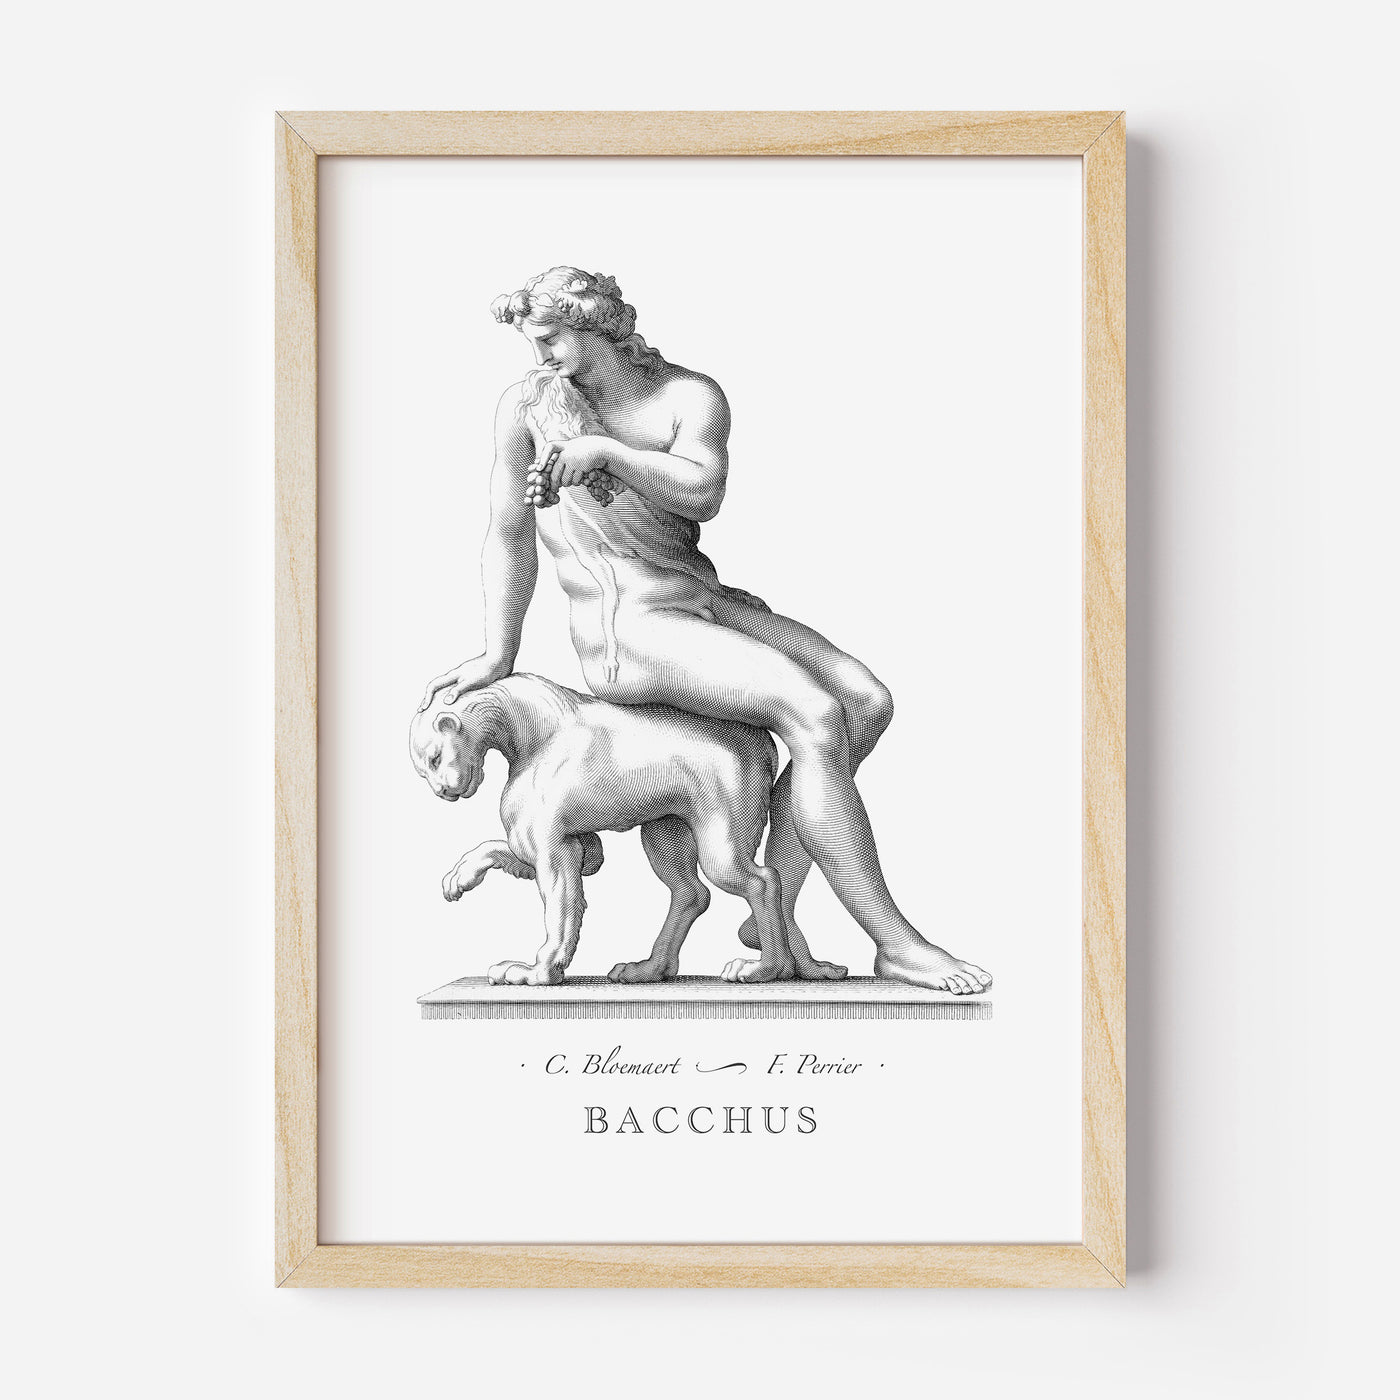 Bacchus engraving